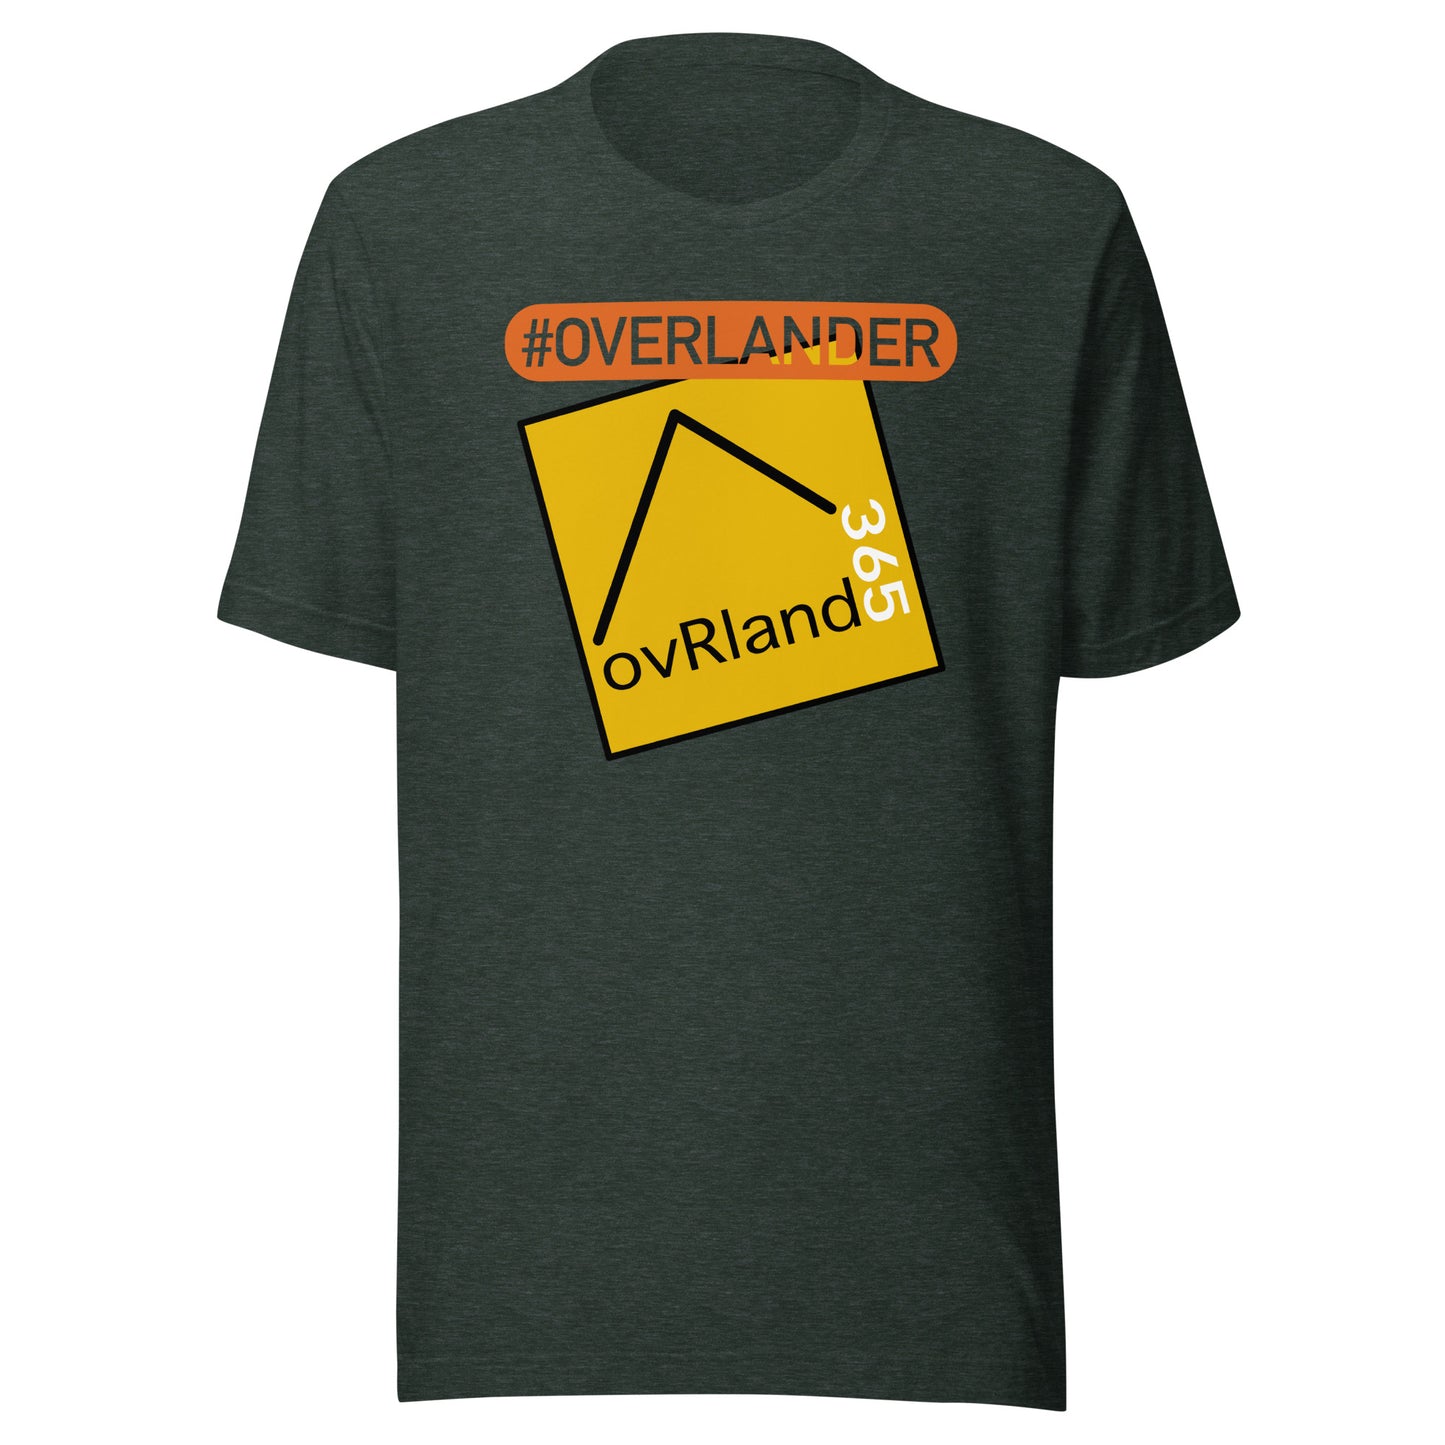 #overlander overlanding t-shirt, forest. overland365.com